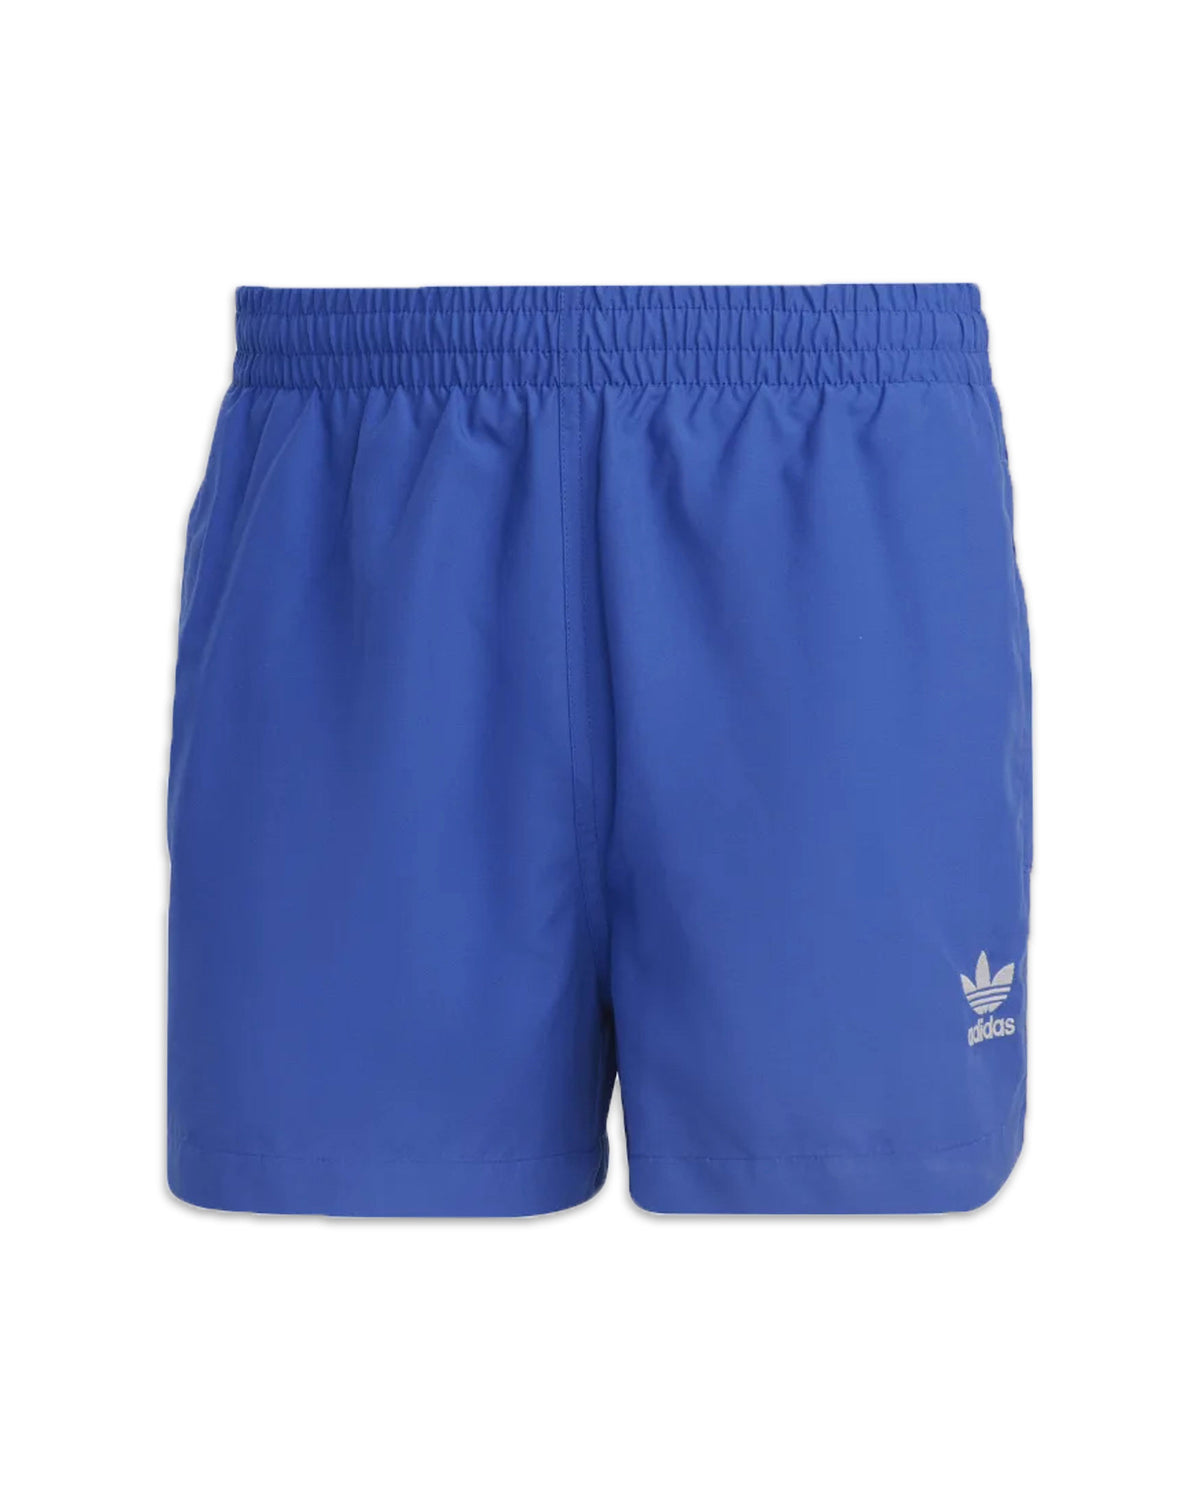 Adidas Originals Adicolor 3-Stripes Swim Short Light Blue